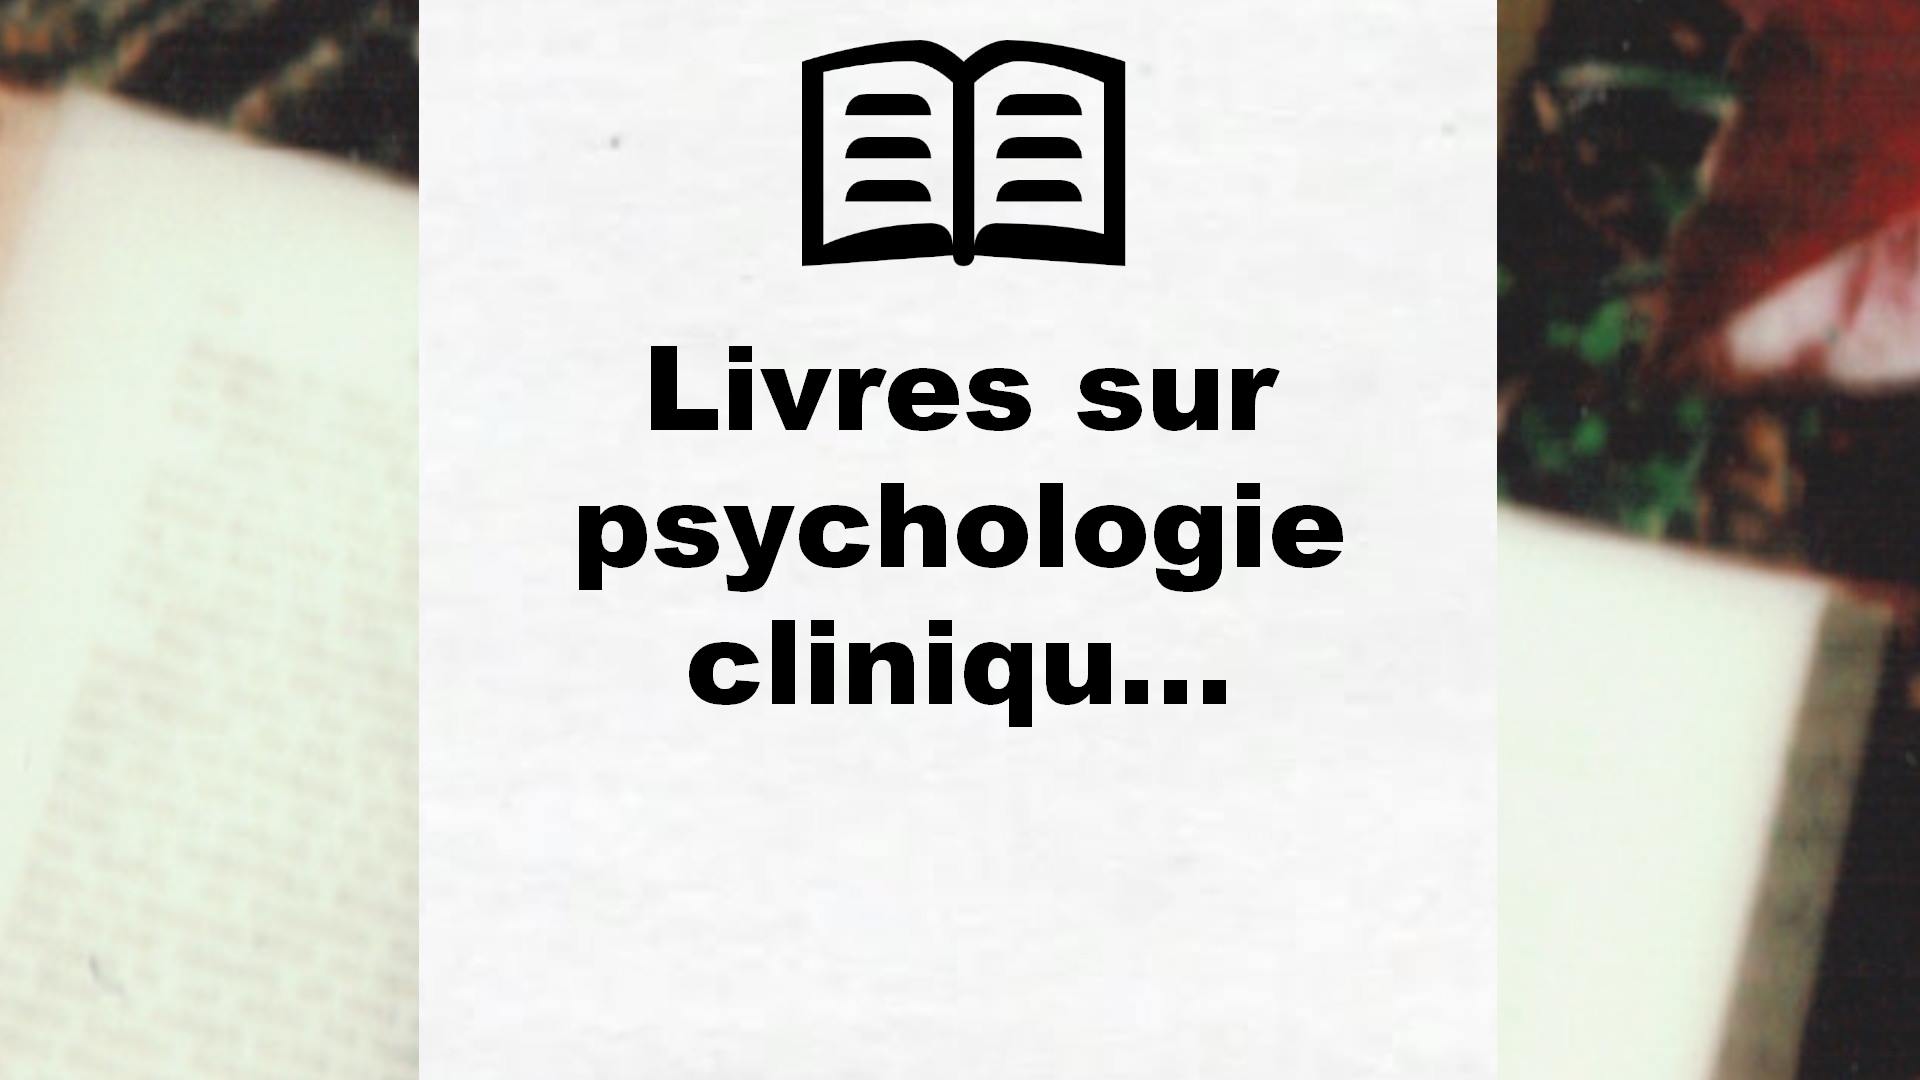 Livres sur psychologie clinique